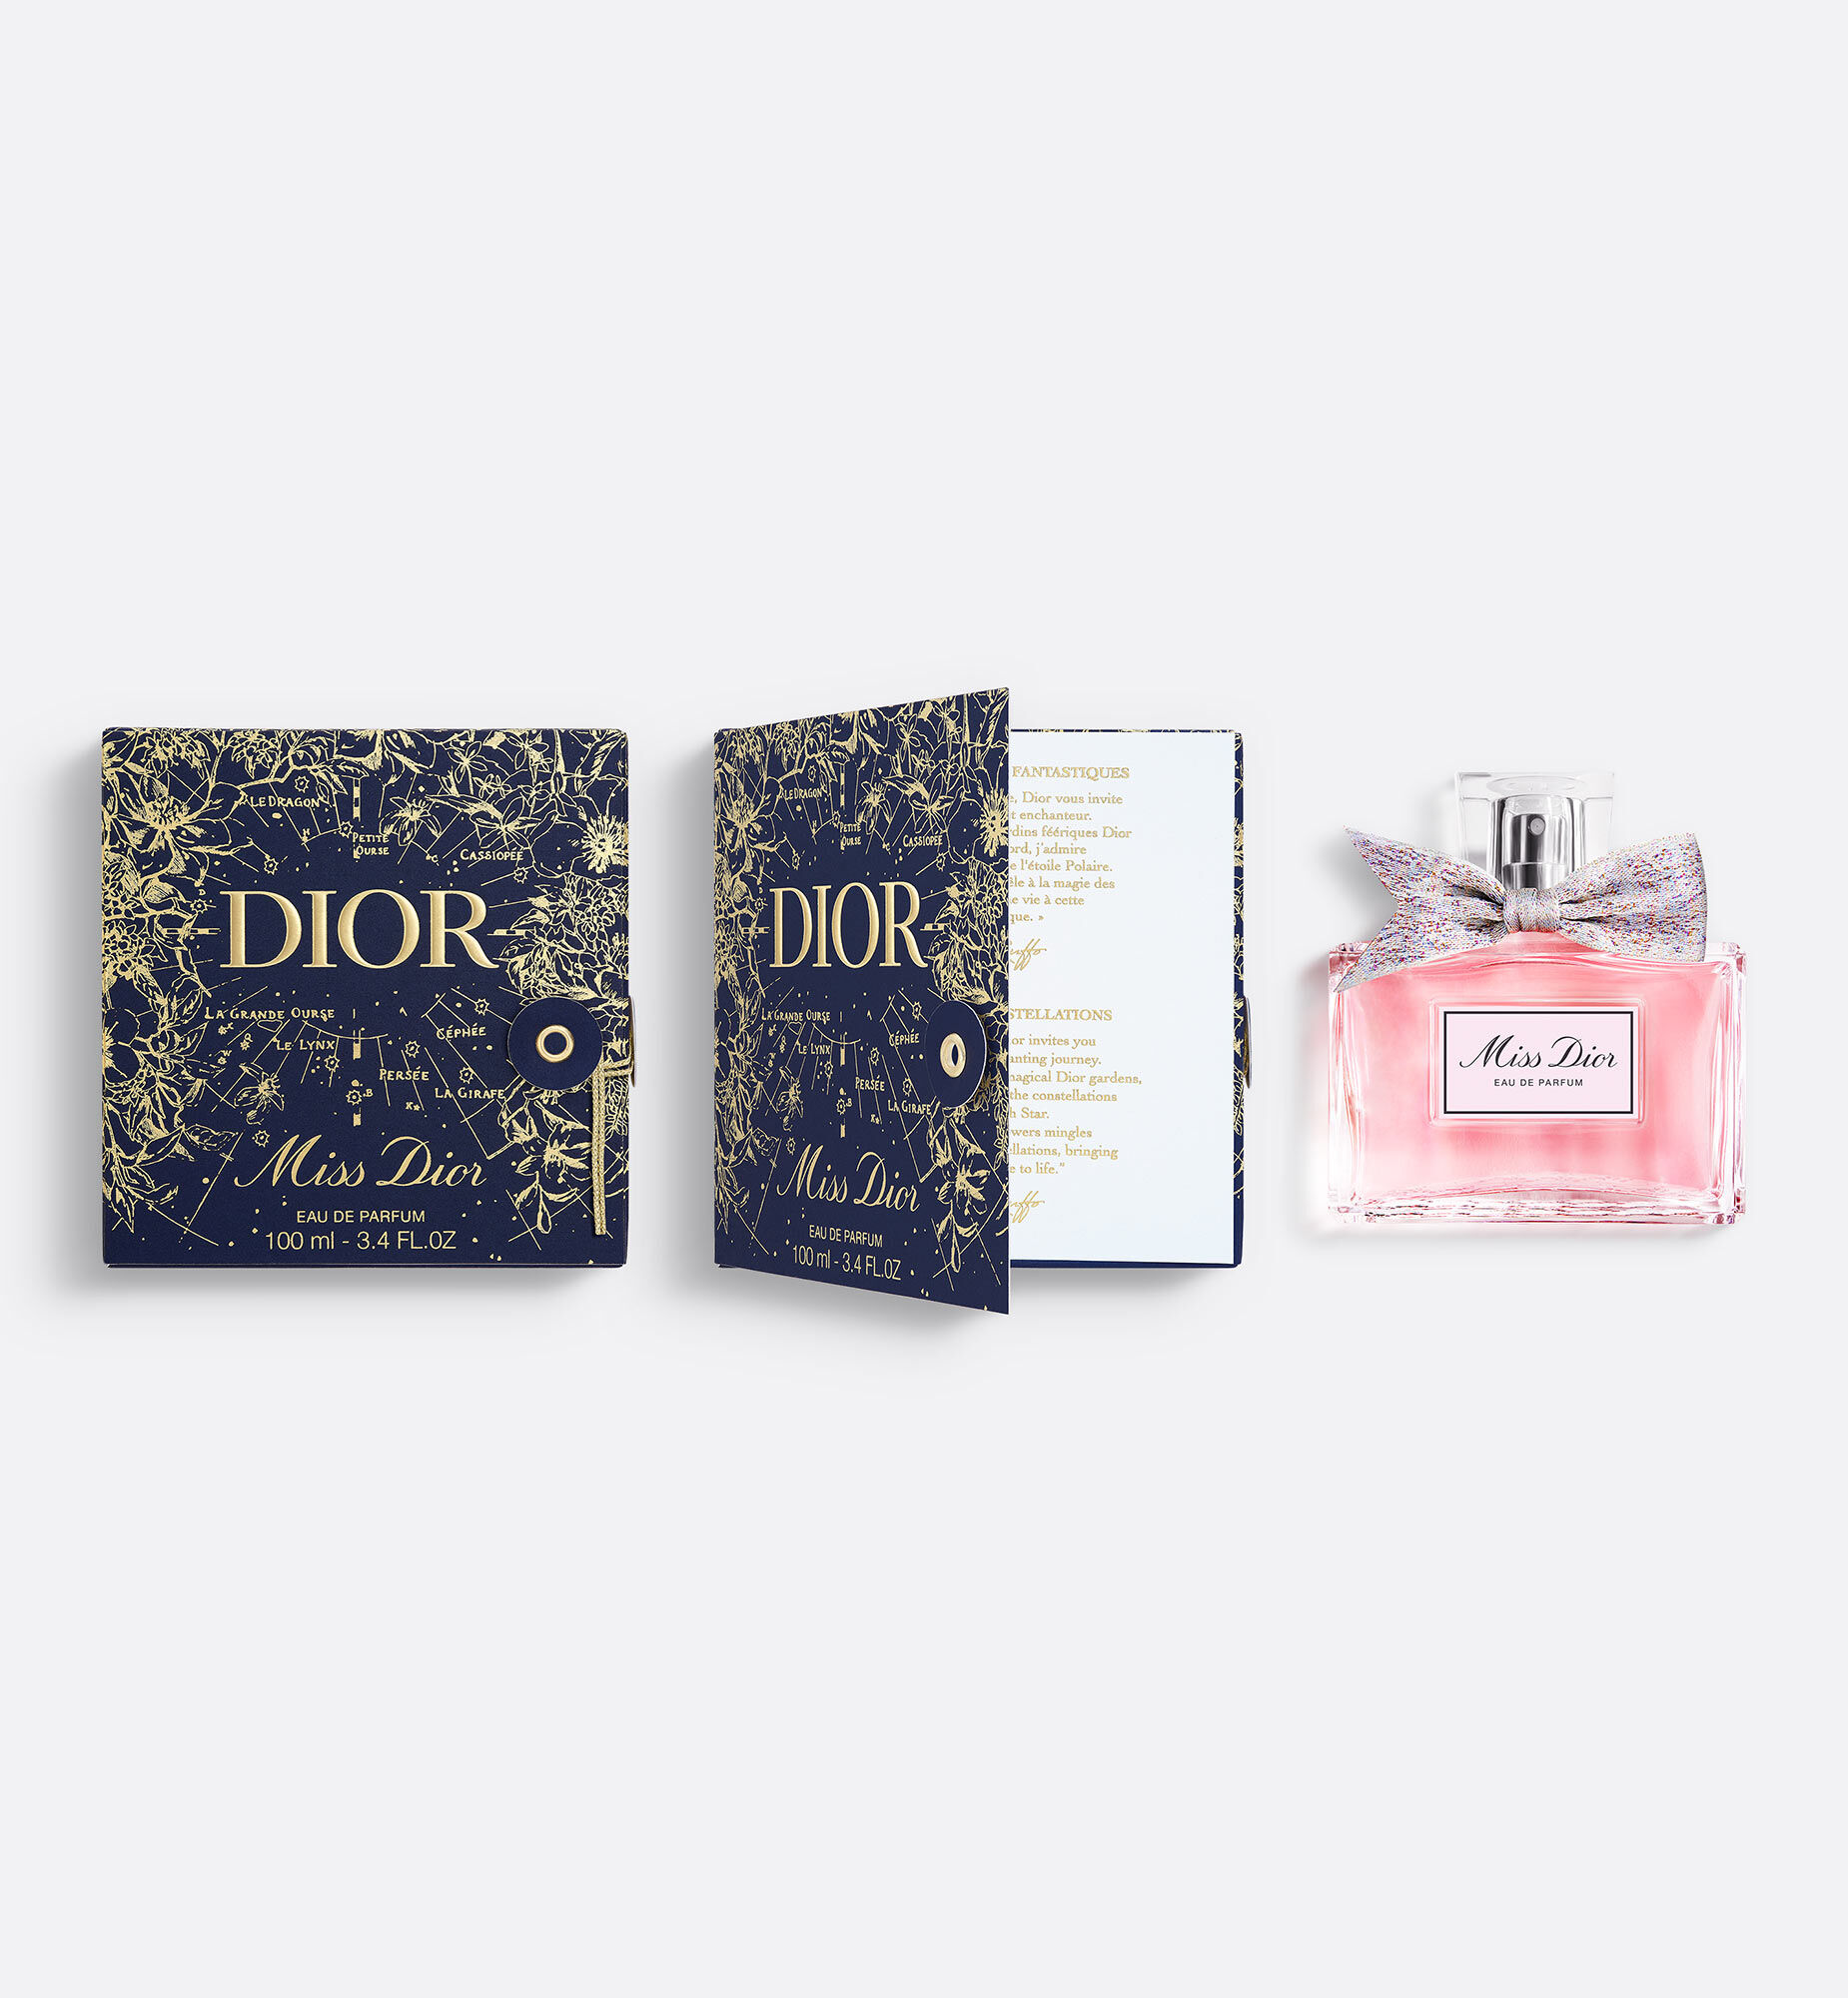 DIOR | フレグランス (香水) メイクアップ (化粧品・コスメ 